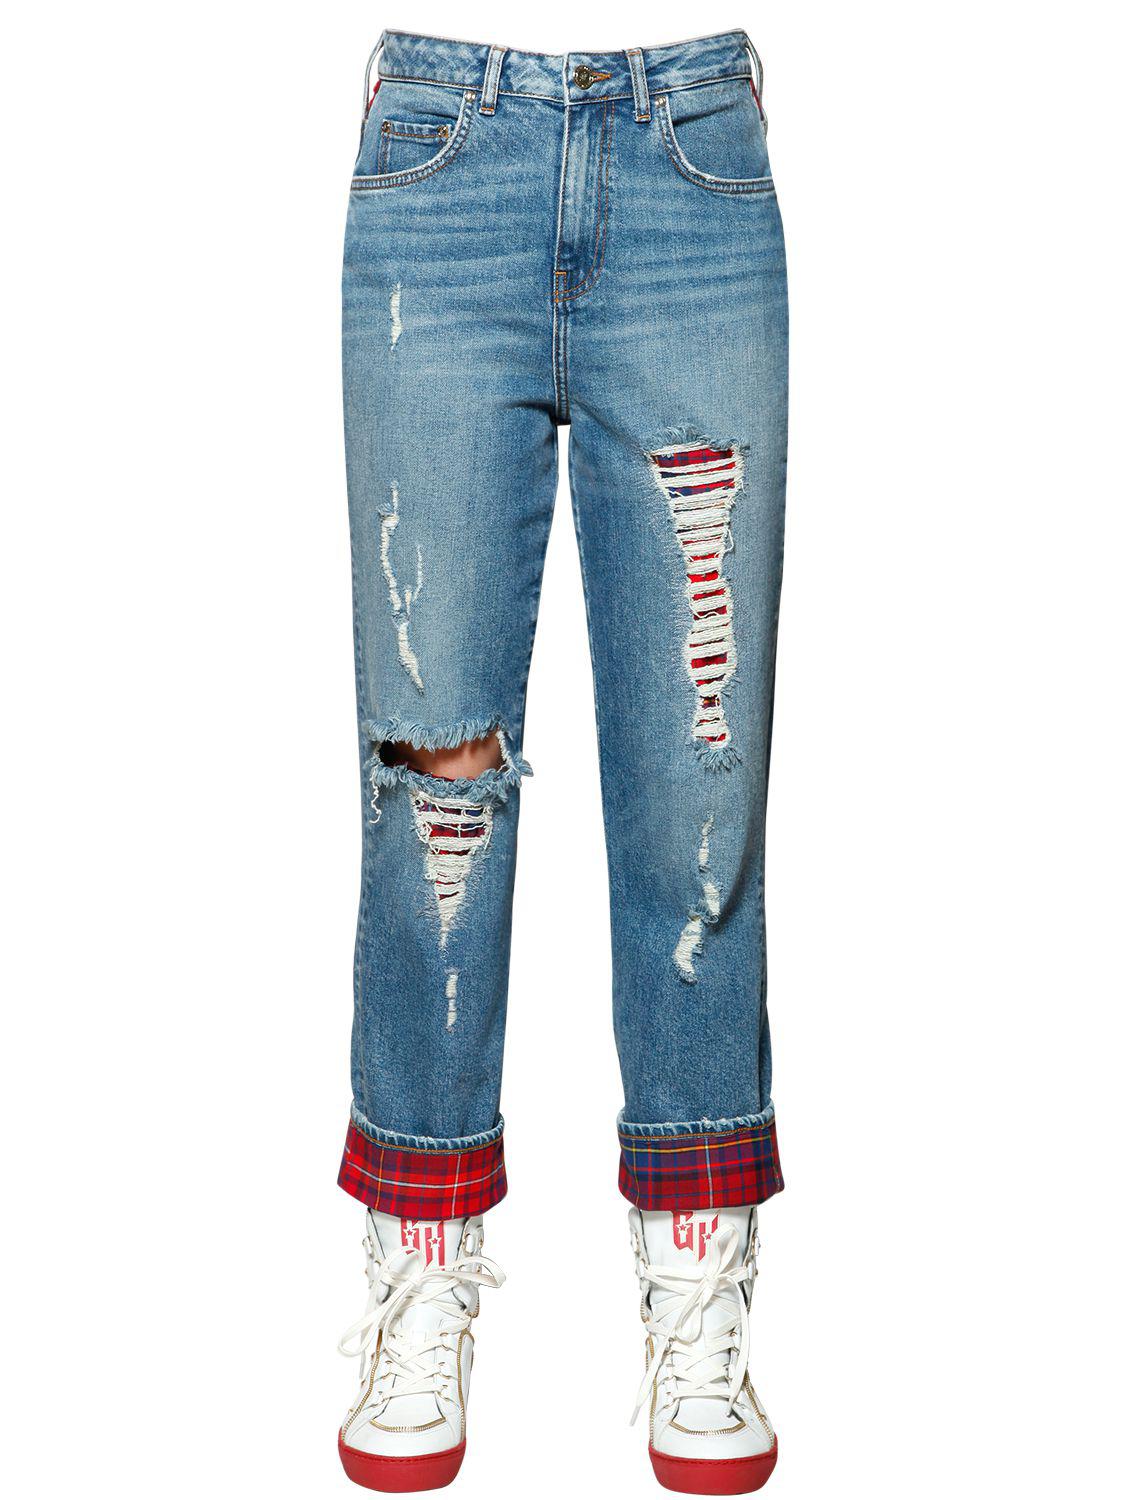 Tommy Hilfiger Plaid & Destroyed Denim Jeans Gigi Hadid in Blue - Lyst